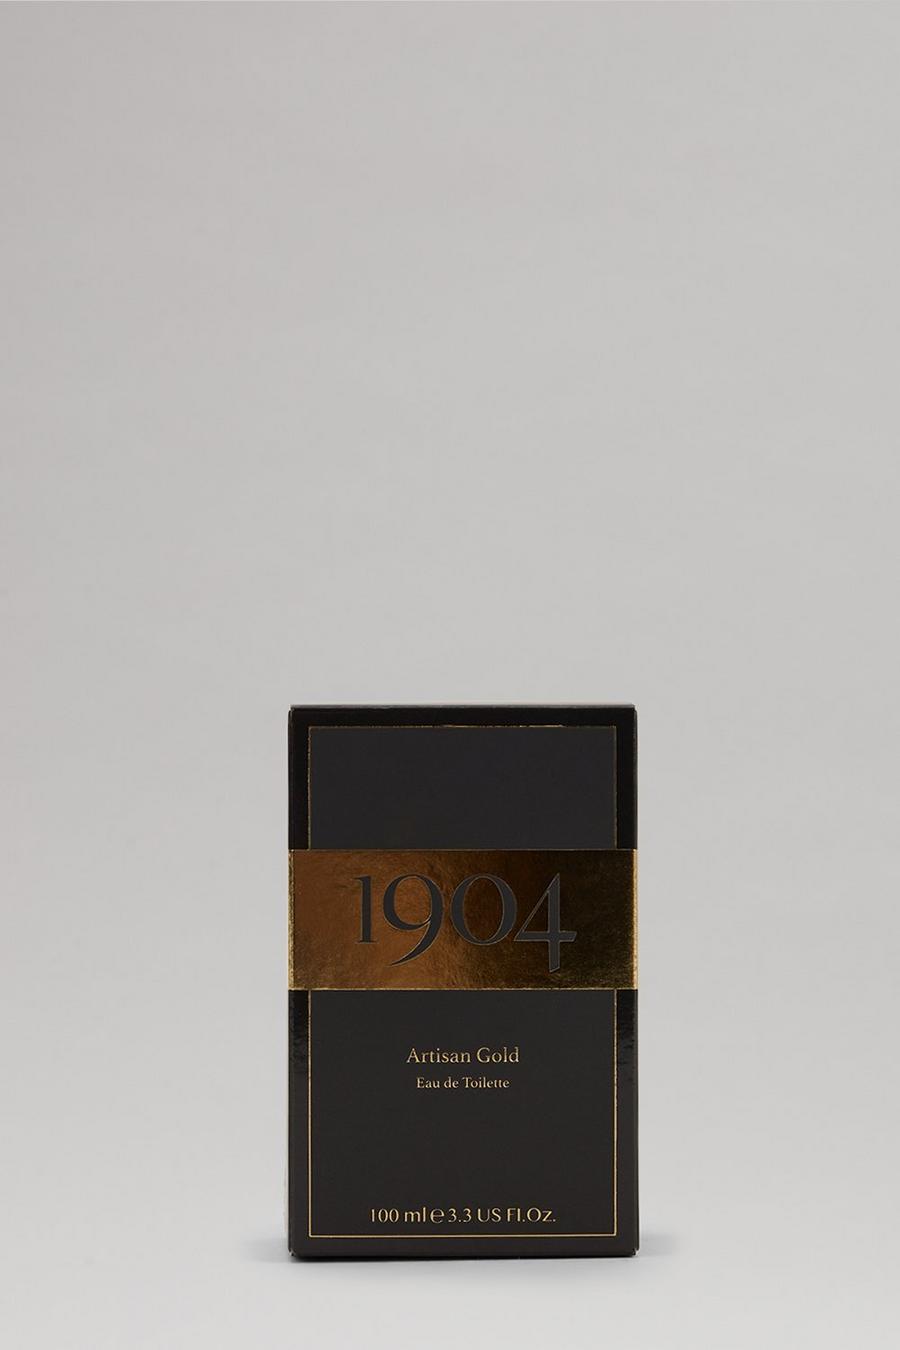 1904 Artisan Gold 100ml Fragrance